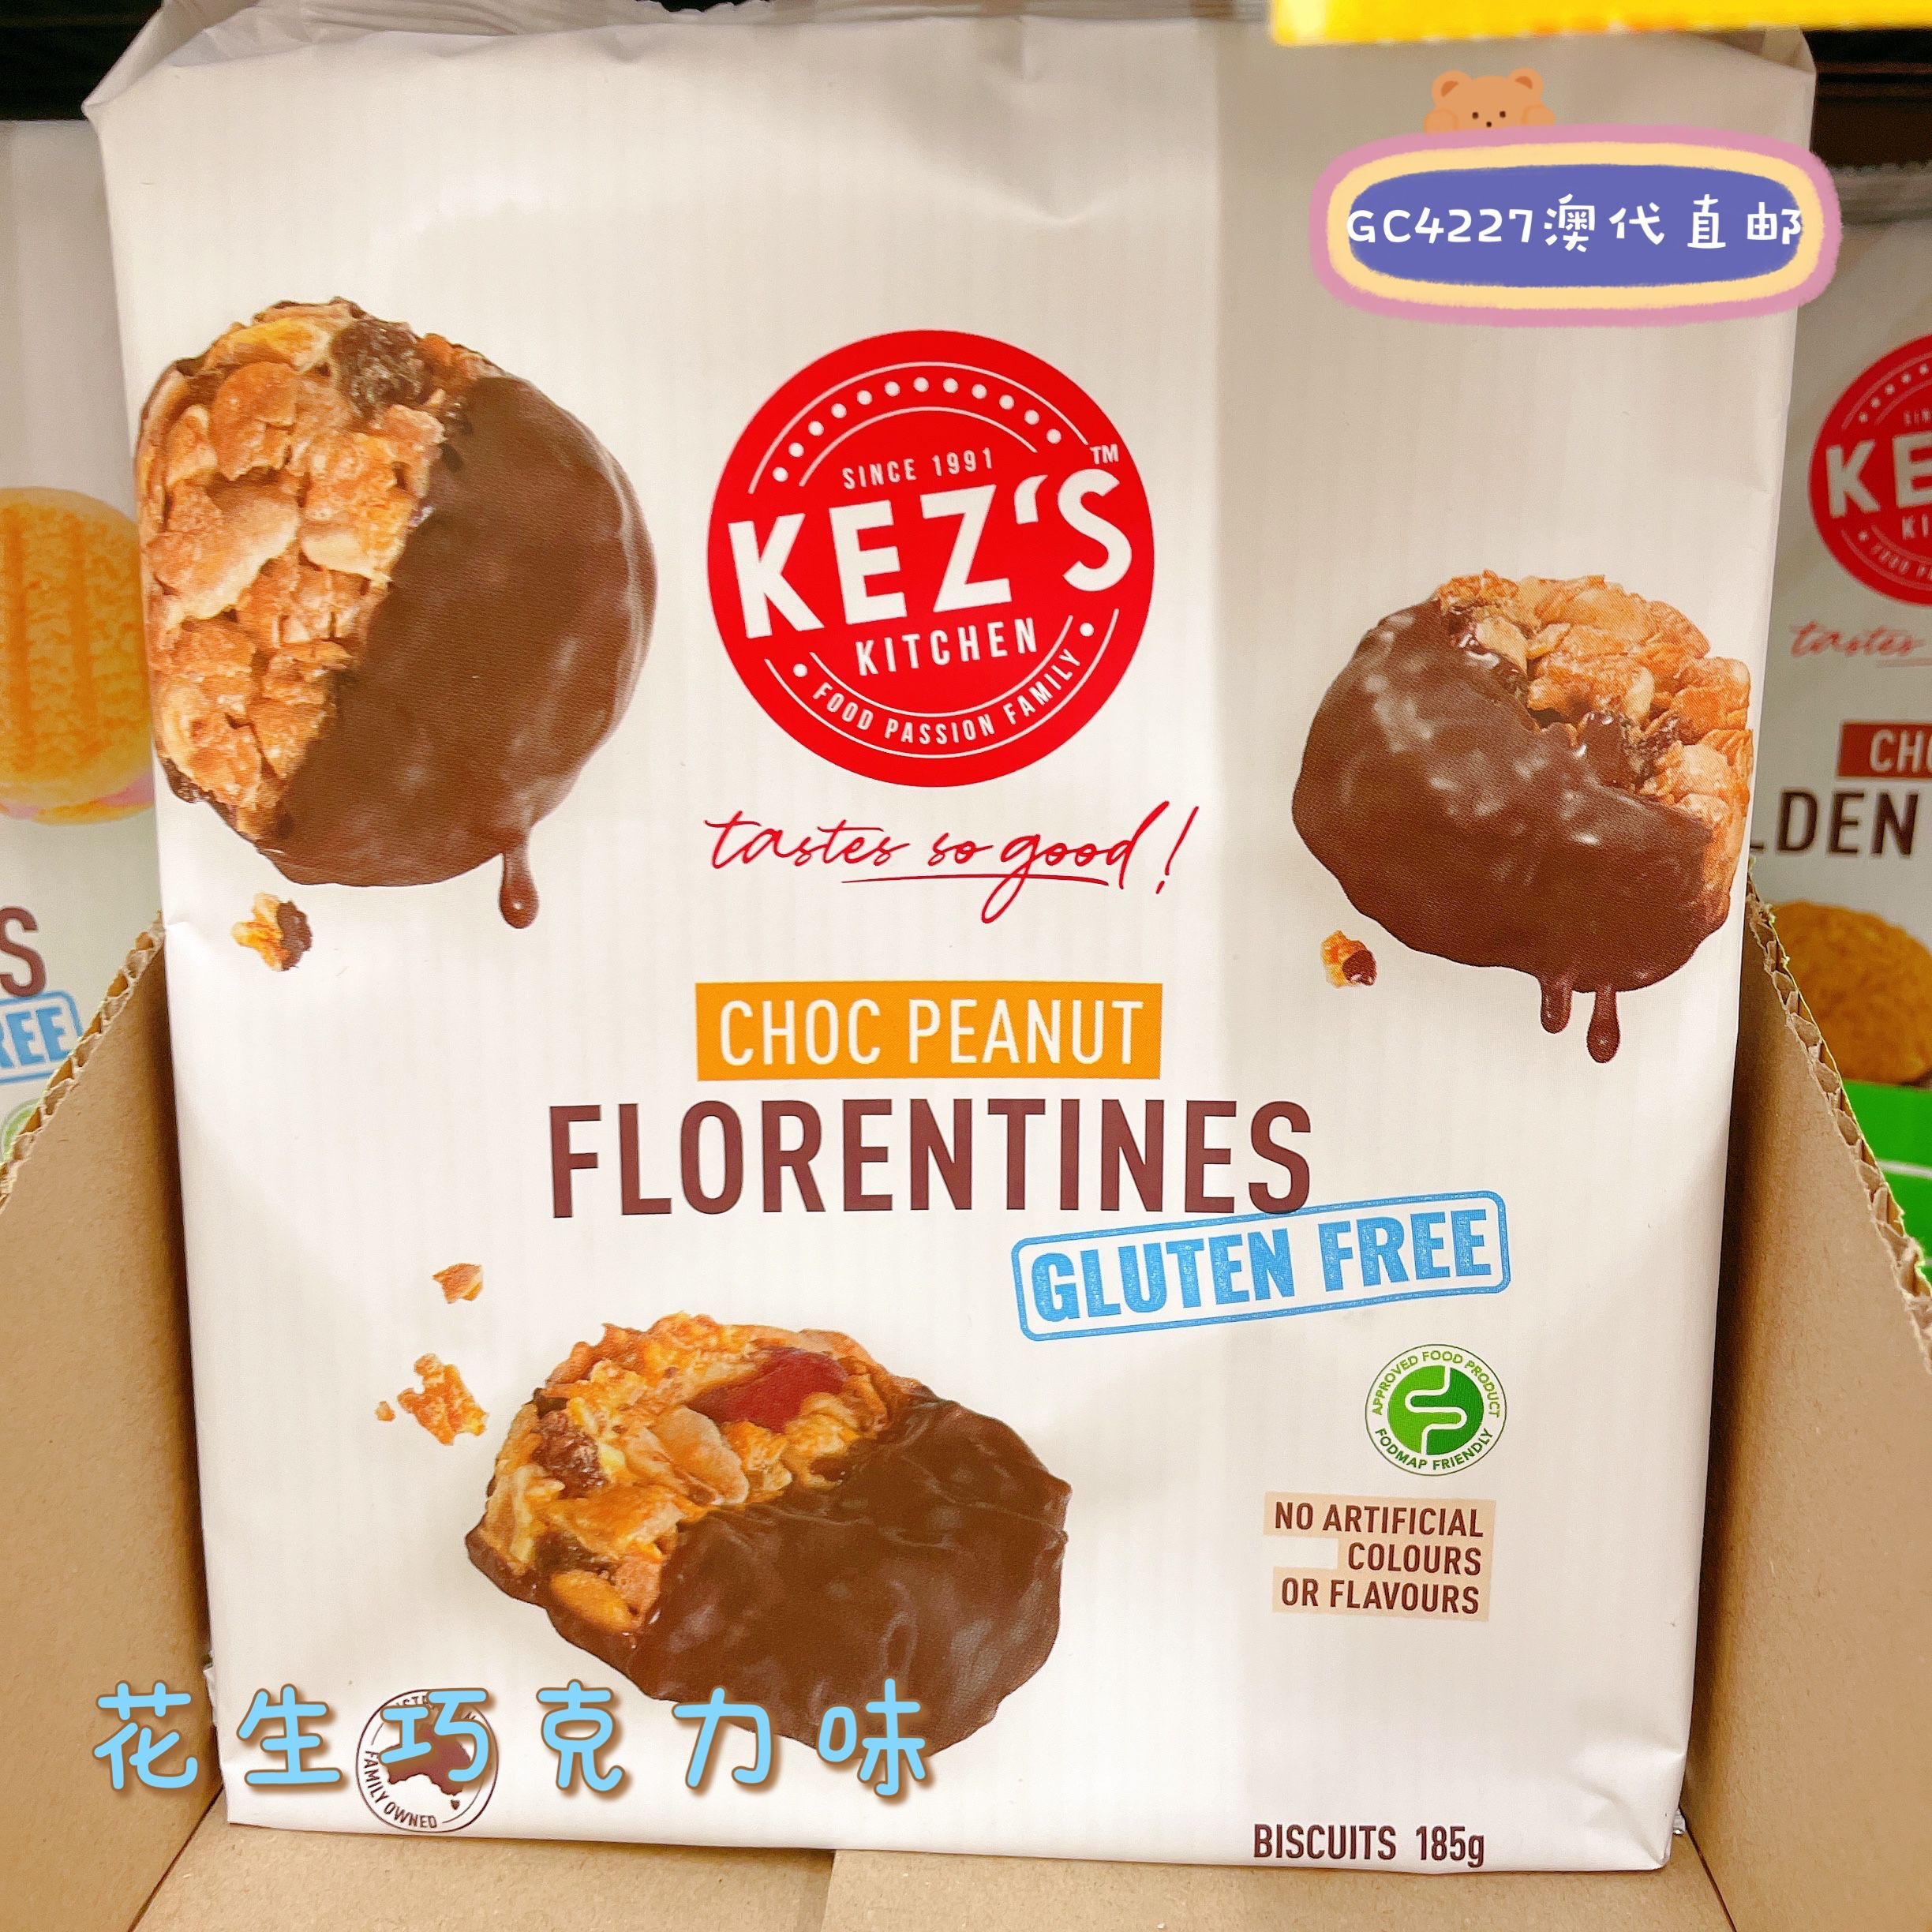 Gc4227澳洲代购直邮Kezs无麸质树莓巧克力奶油曲奇饼干无牛奶180g - 图2